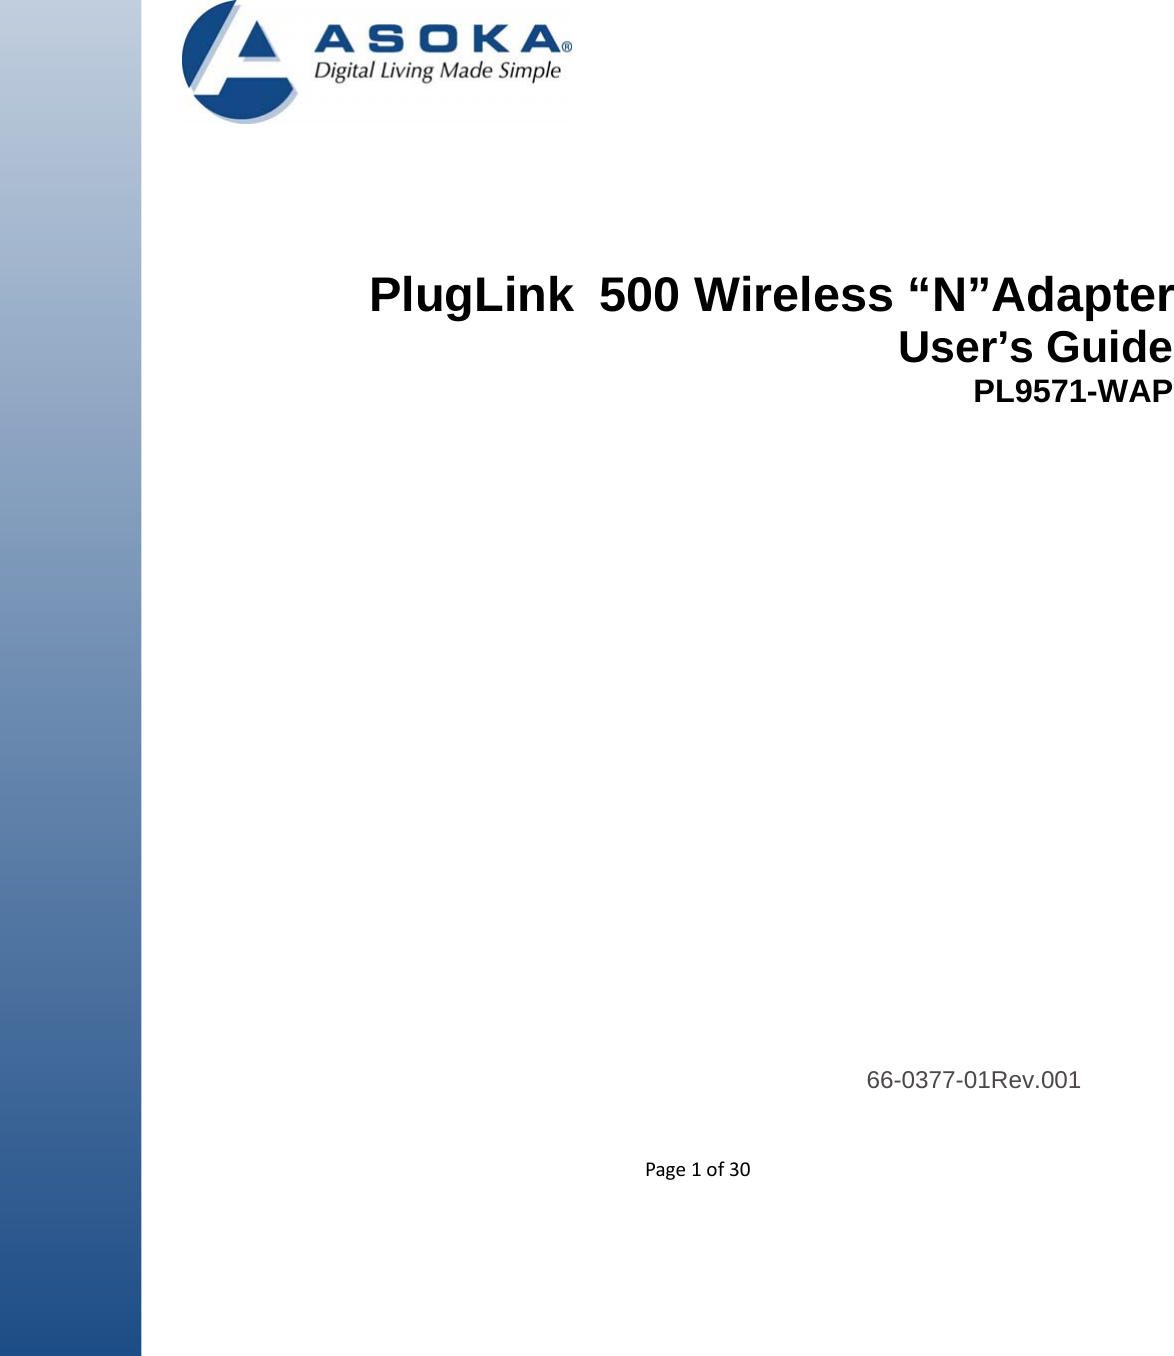  Page1of30          PlugLink  500 Wireless “N”Adapter User’s Guide PL9571-WAP                                  66-0377-01Rev.001  